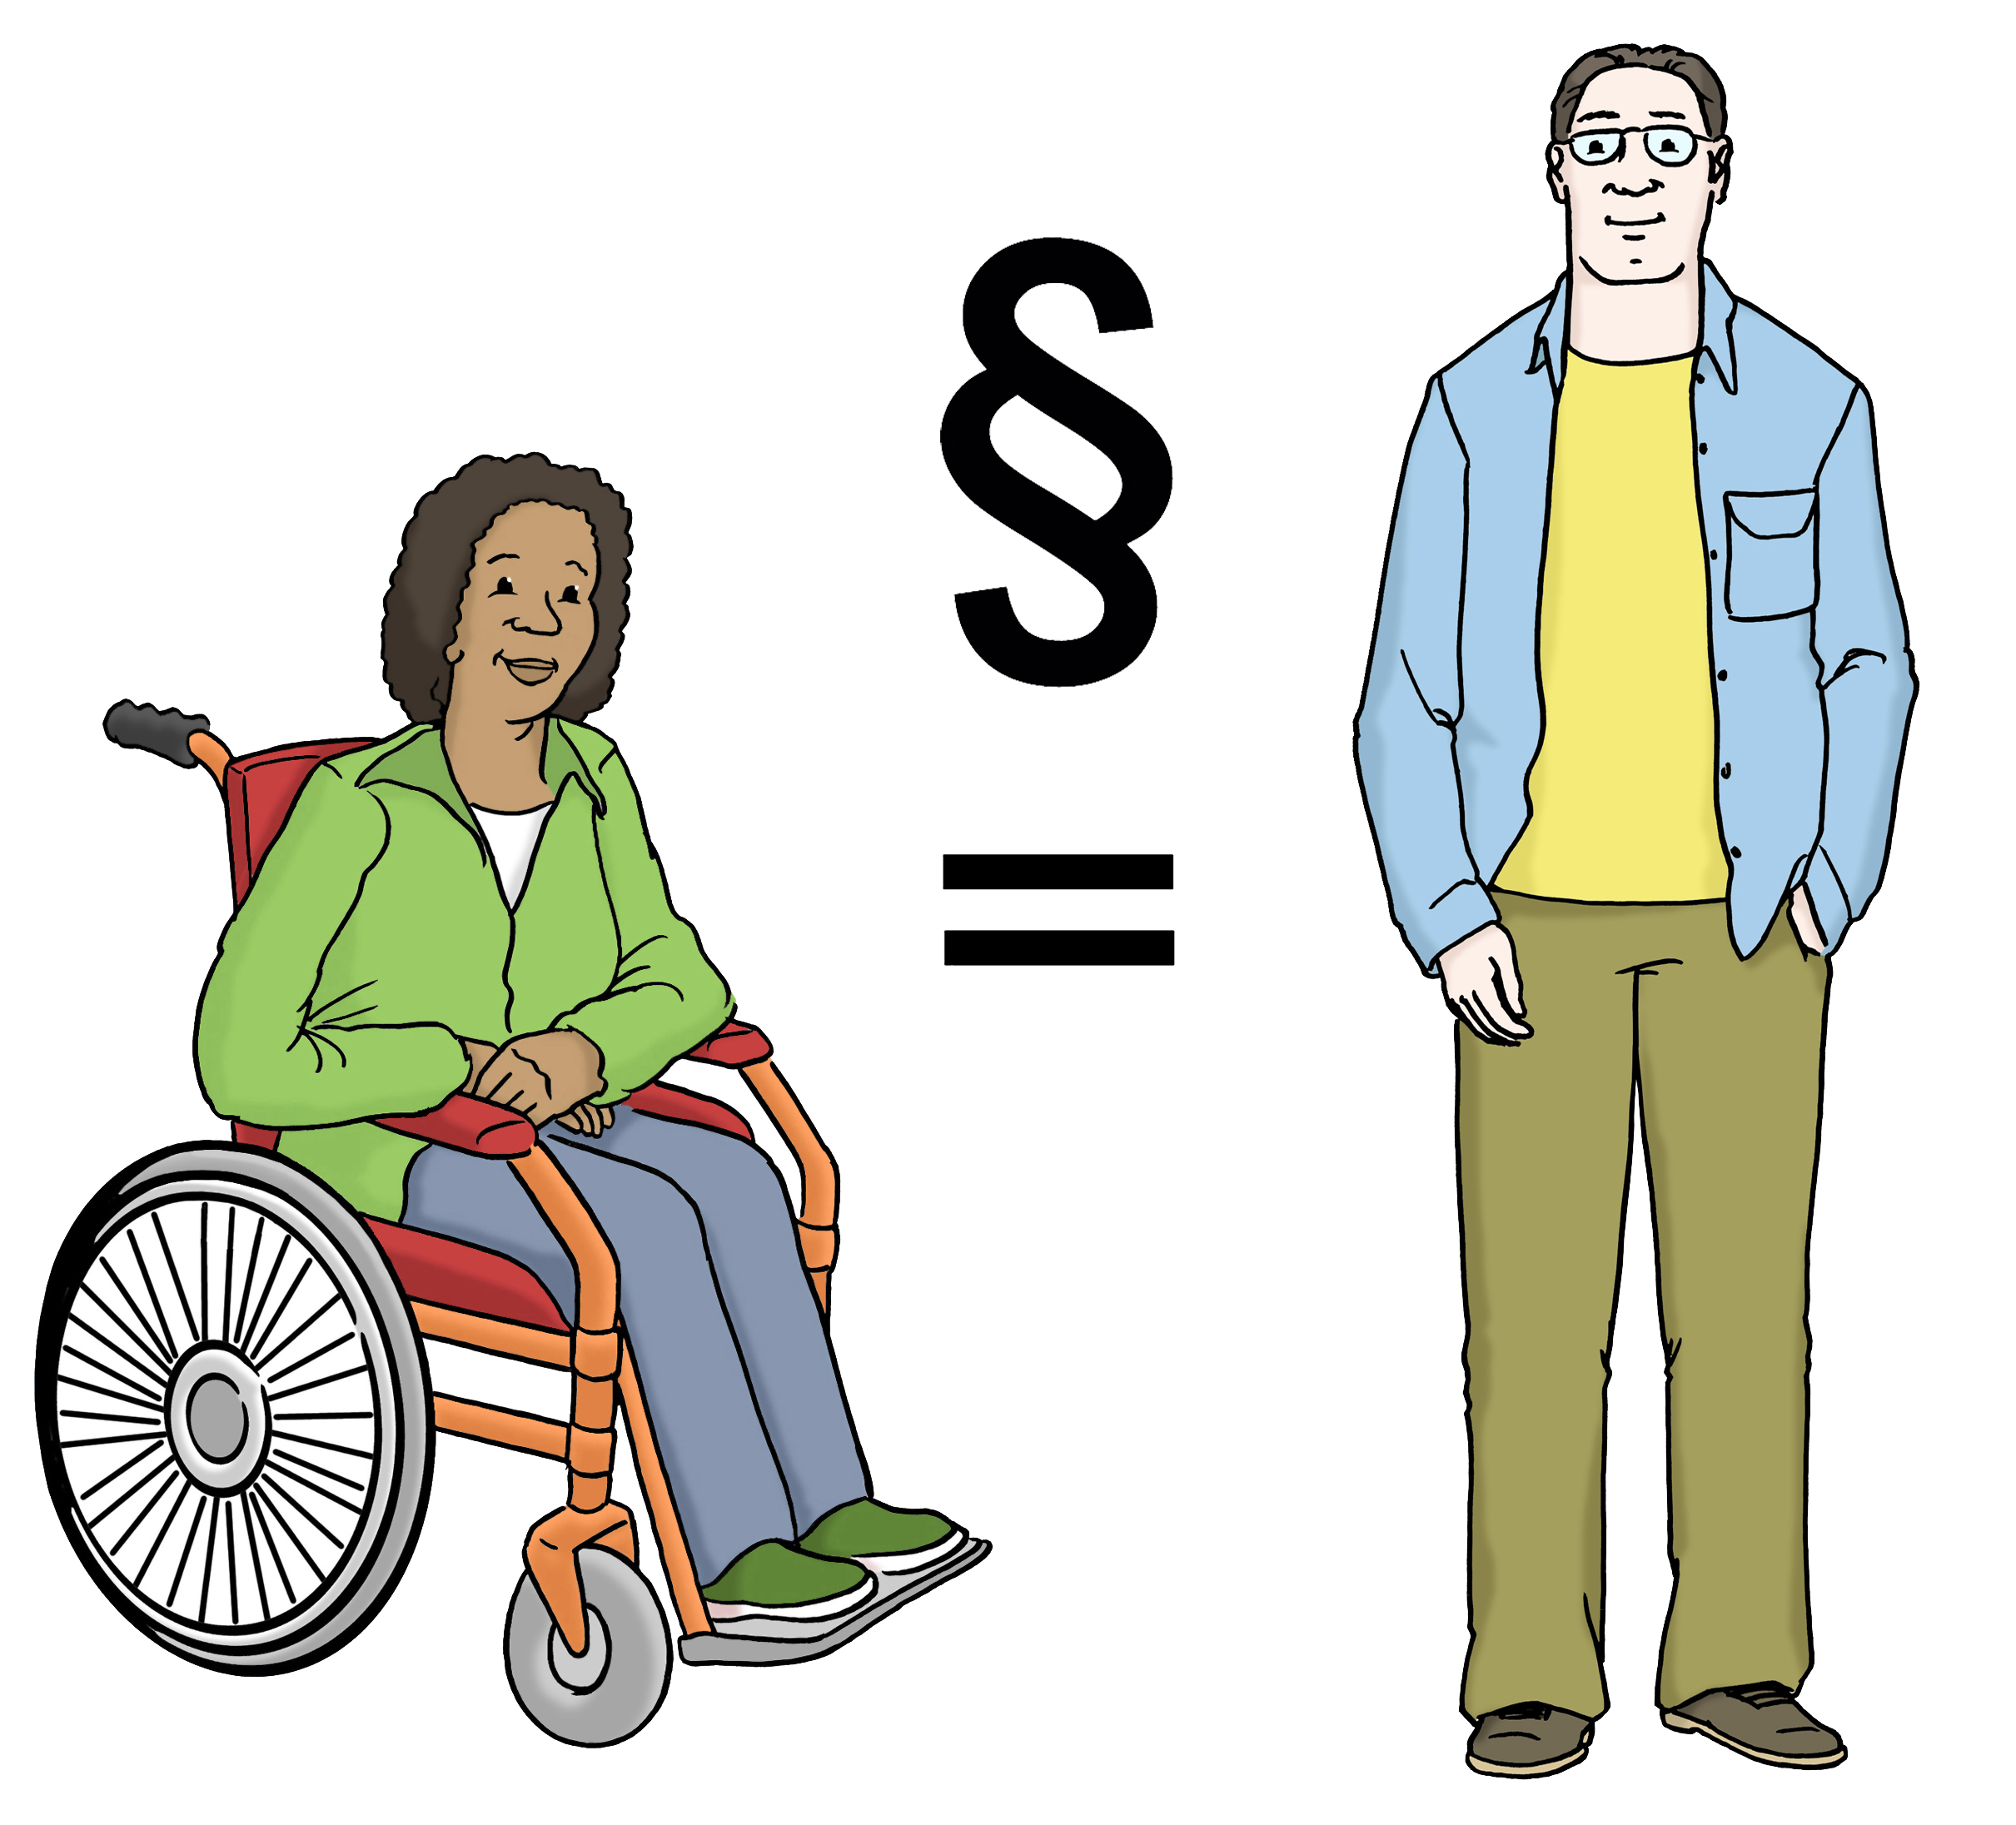 Links eine Schwarze Frau im Rollstuhl, rechts ein nicht-behinderter weißer Mann, dazwischen ein Gleichheitszeichen mit einem Paragraphen darüber